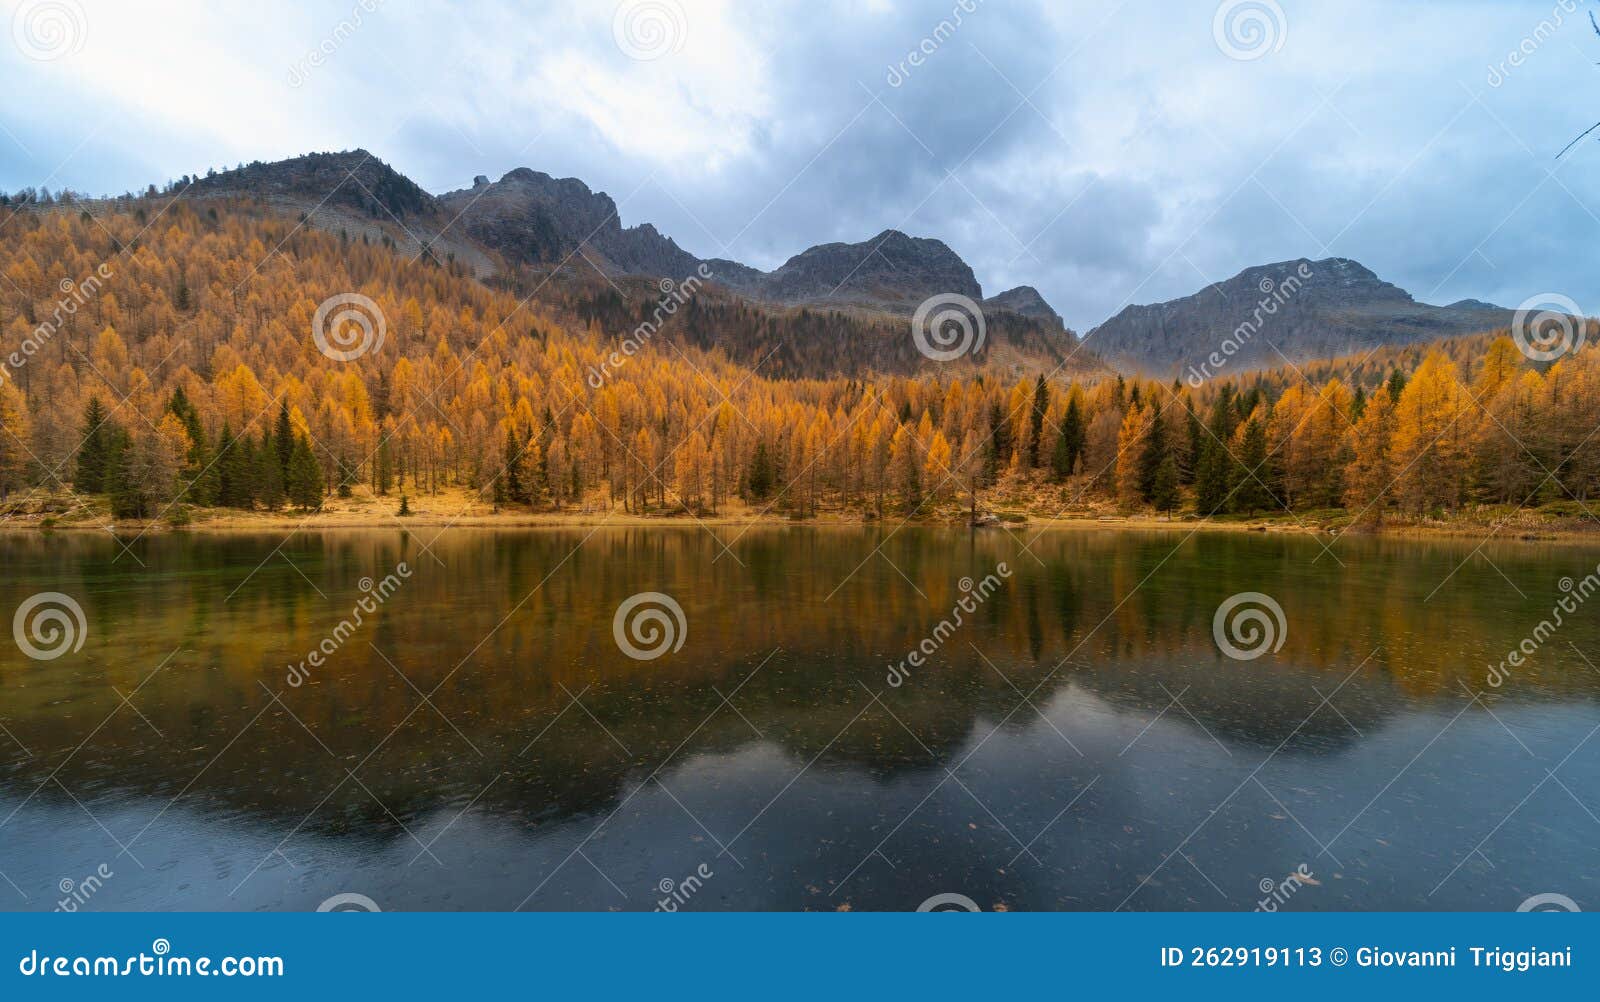 amazing autumn landscape on mountians lake. dolomites italy